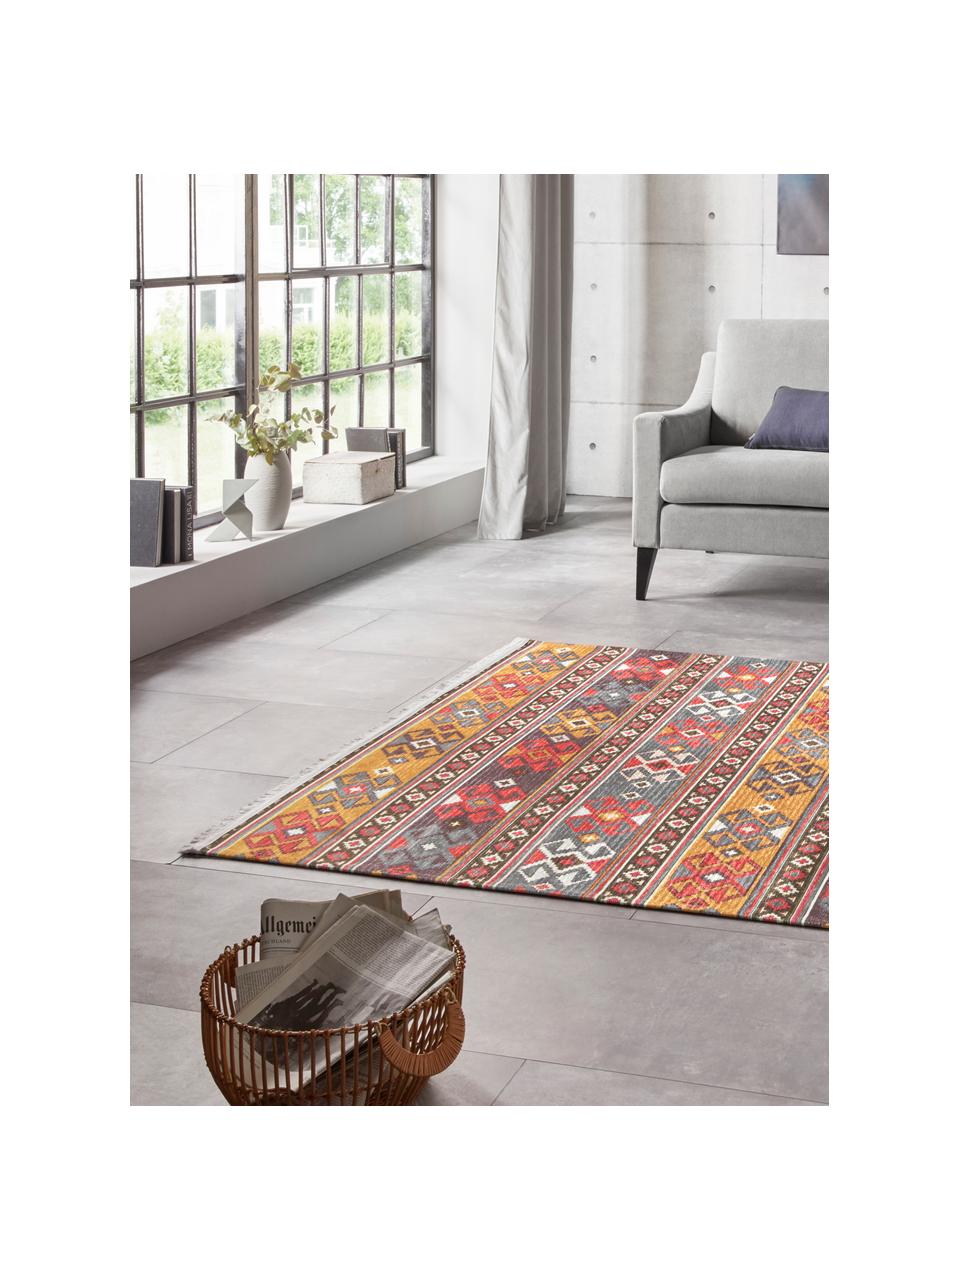 Teppich Kevan im Orientstyle, Flor: 50% Polyester, 50% Baumwo, Mehrfarbig, B 180 x L 280 cm (Grösse M)